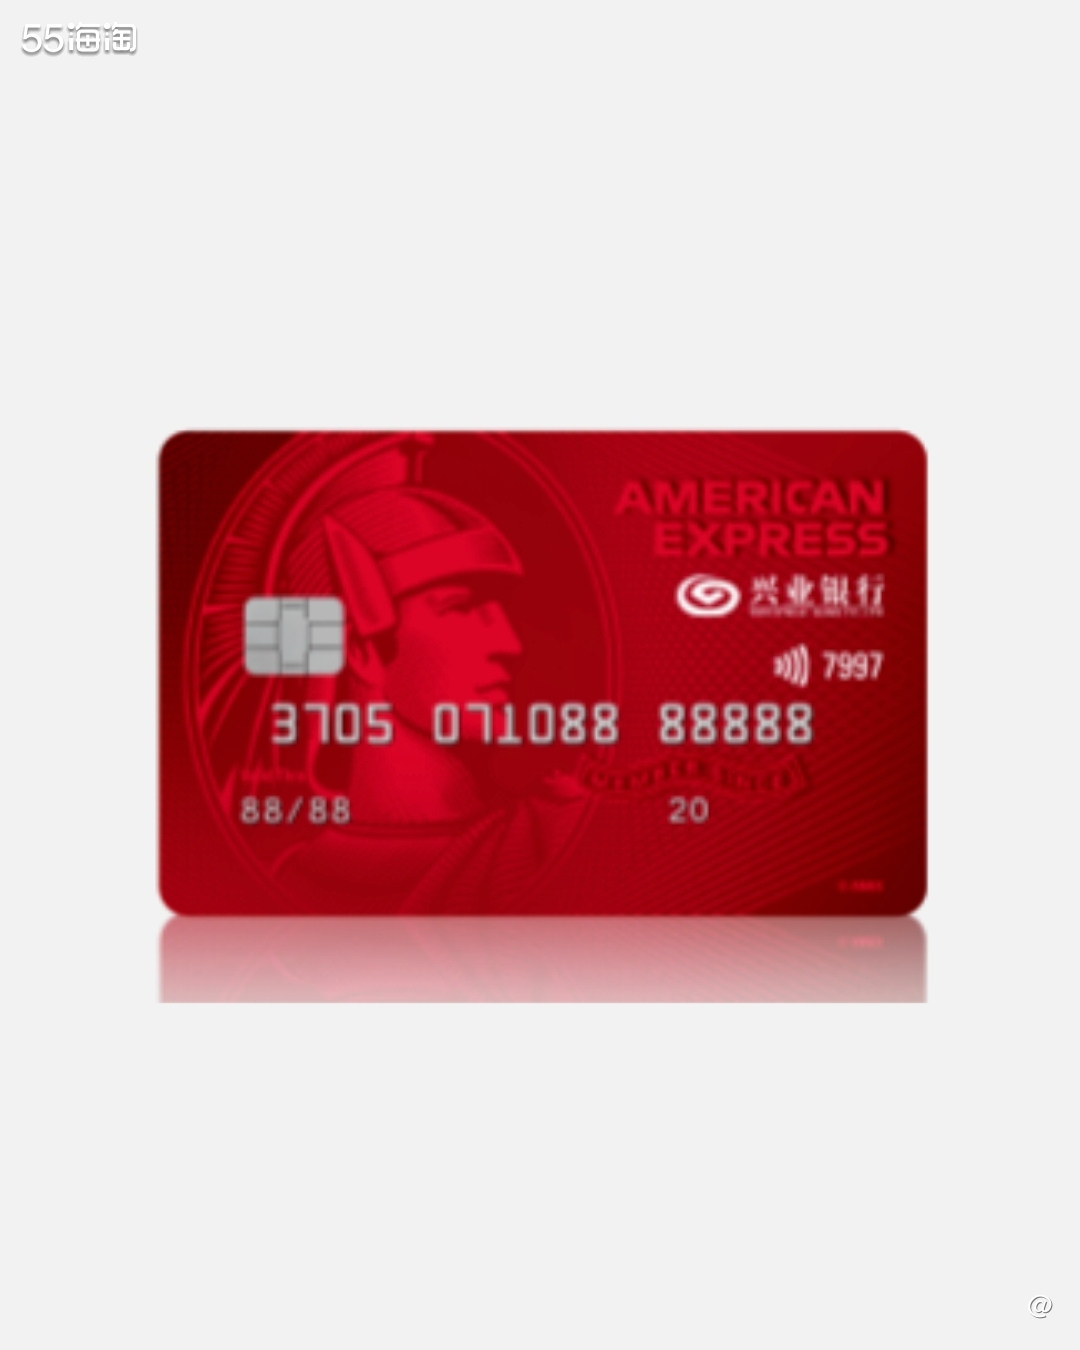 #美国运通卡我#兴业银行运通耀红卡  🔴卡片介绍： 该卡是